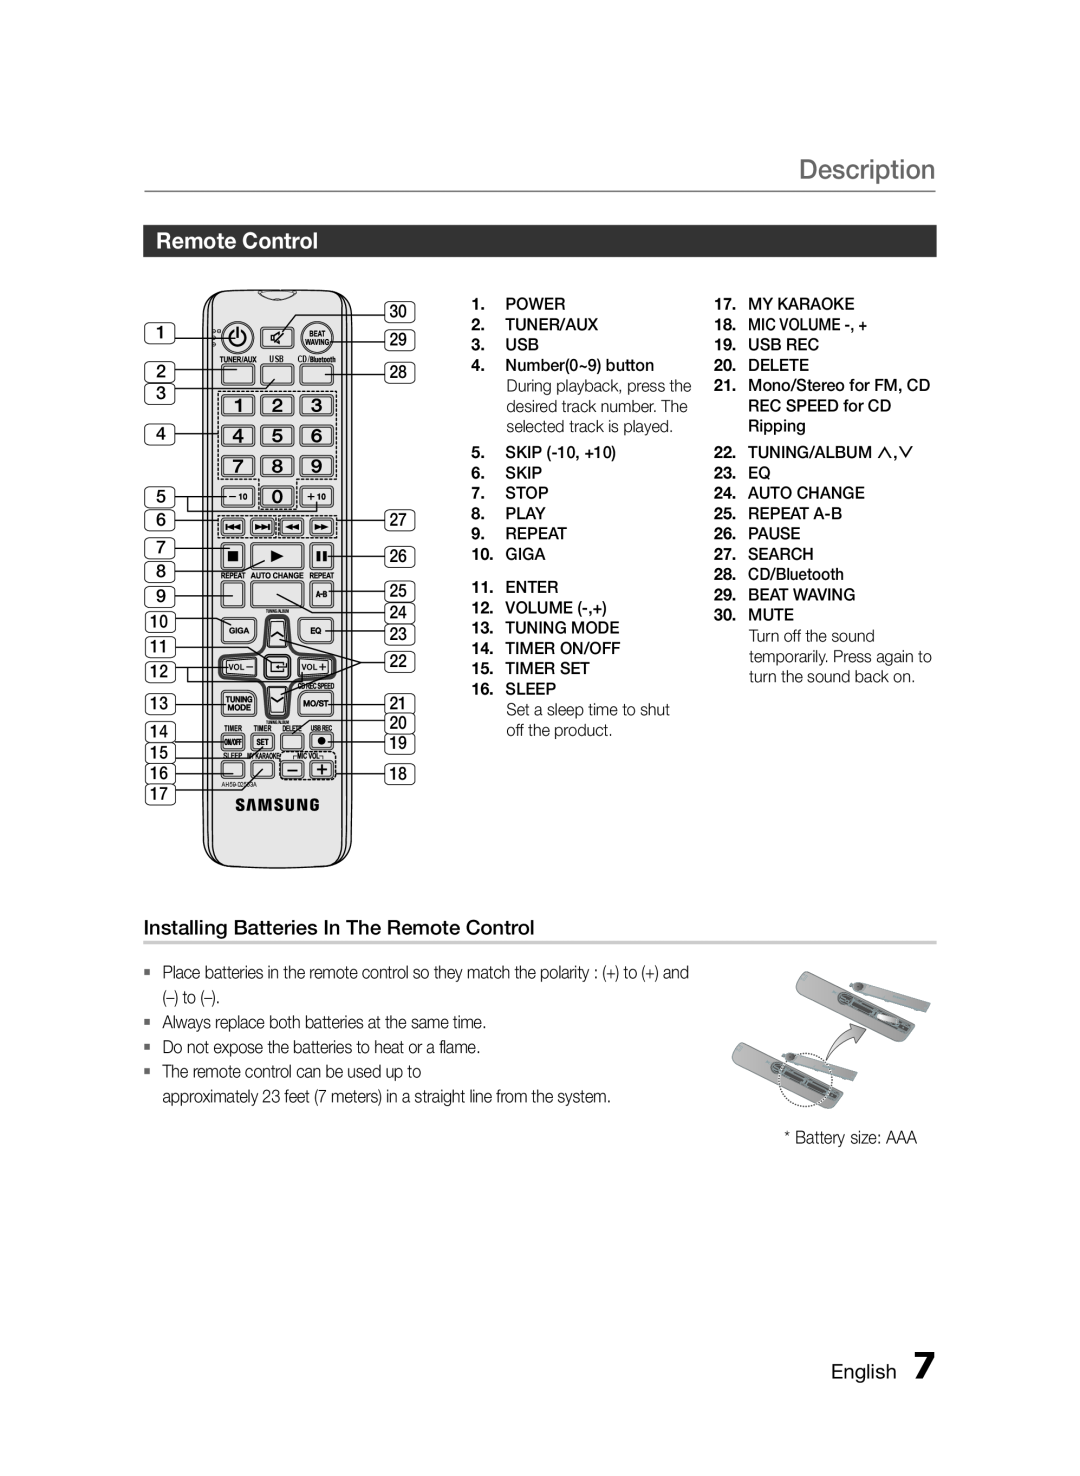 Samsung MXFS9000ZA user manual Description, Installing Batteries In The Remote Control, English 